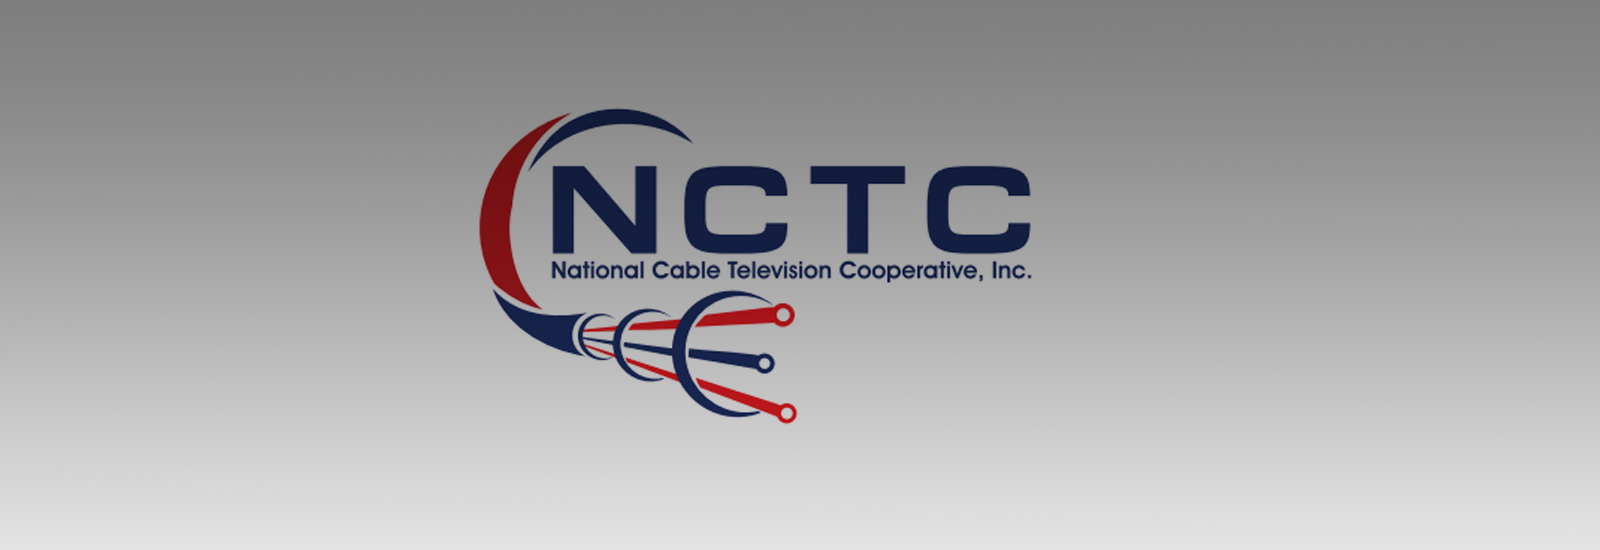 HITN Amplia Sus Oportunidades de Distribución Mediante Acuerdo con National Cable Television Cooperation (NCTC)